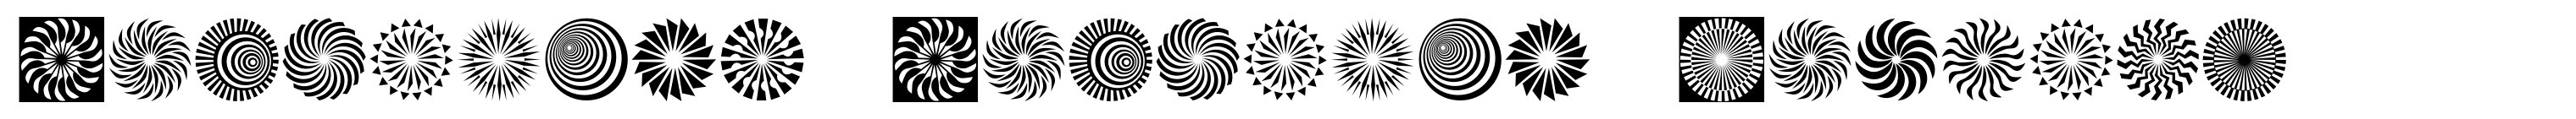 Hypnotica Hypnotic Symbols